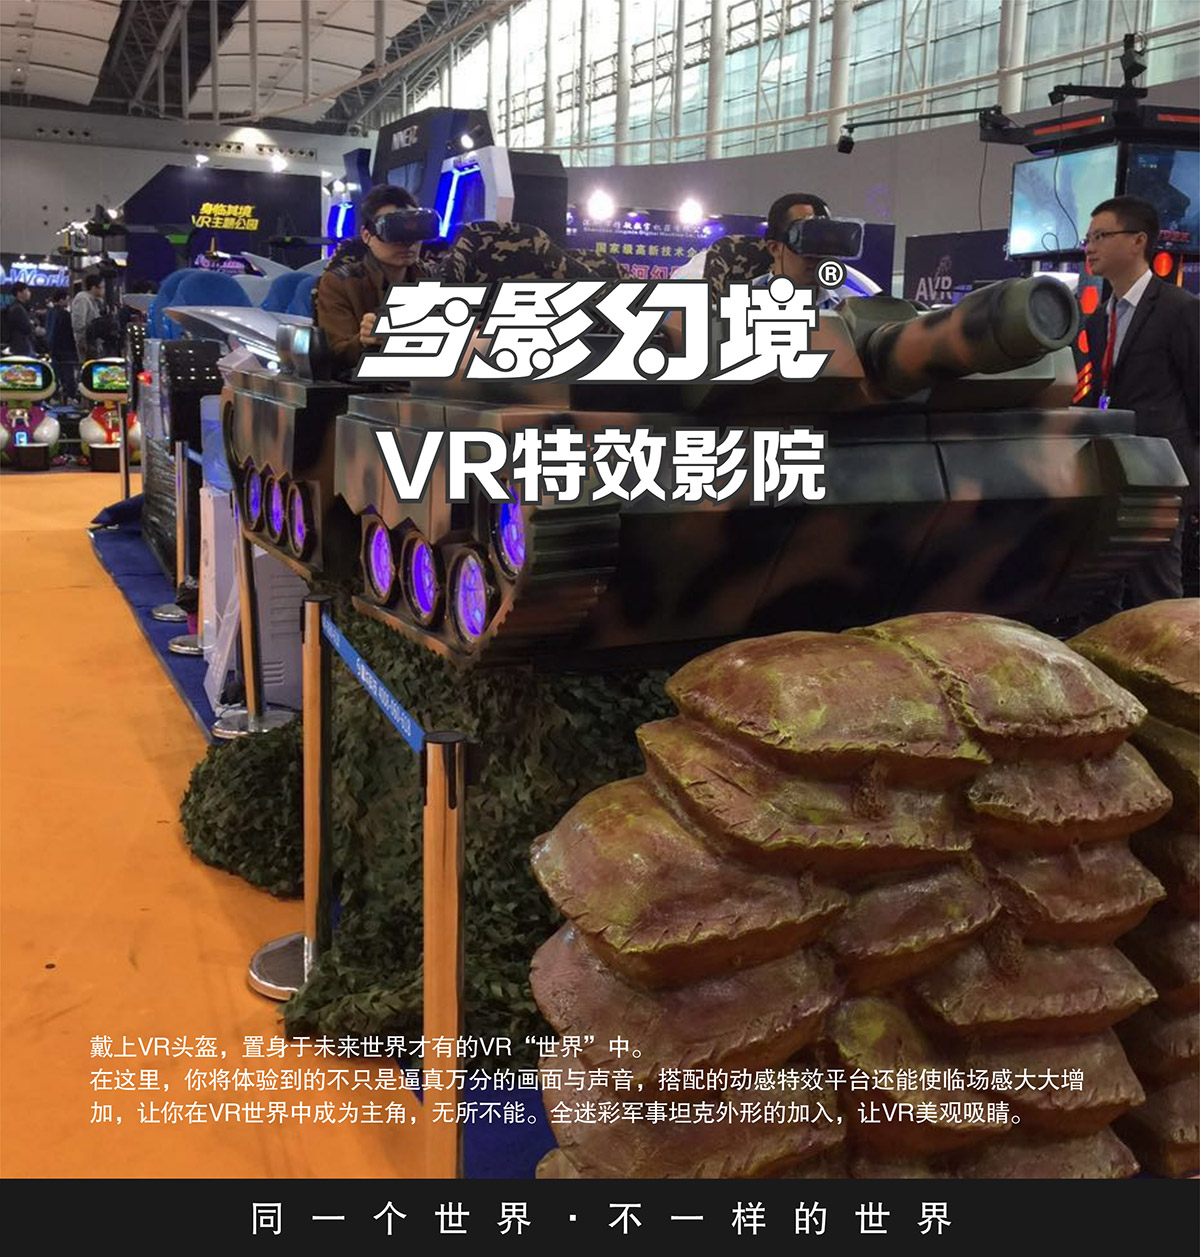 模拟安全首款VR特效影院坦克对战.jpg